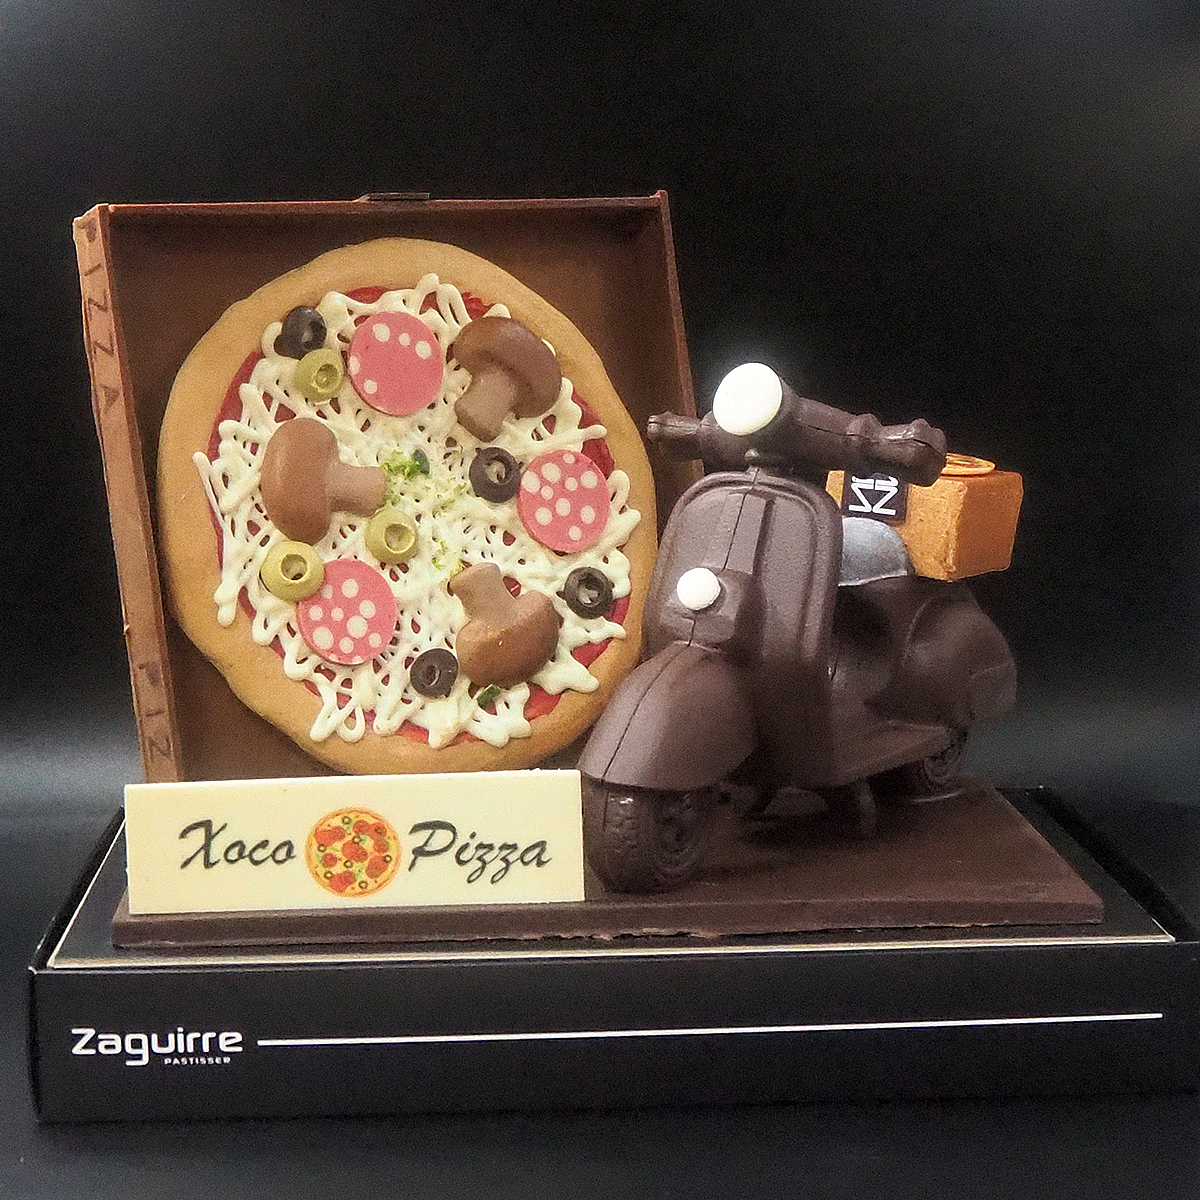 Mona de Pascua de chocolate con forma de pizza y moto elaborada artesanalmente por Zaguirre Pastisser.